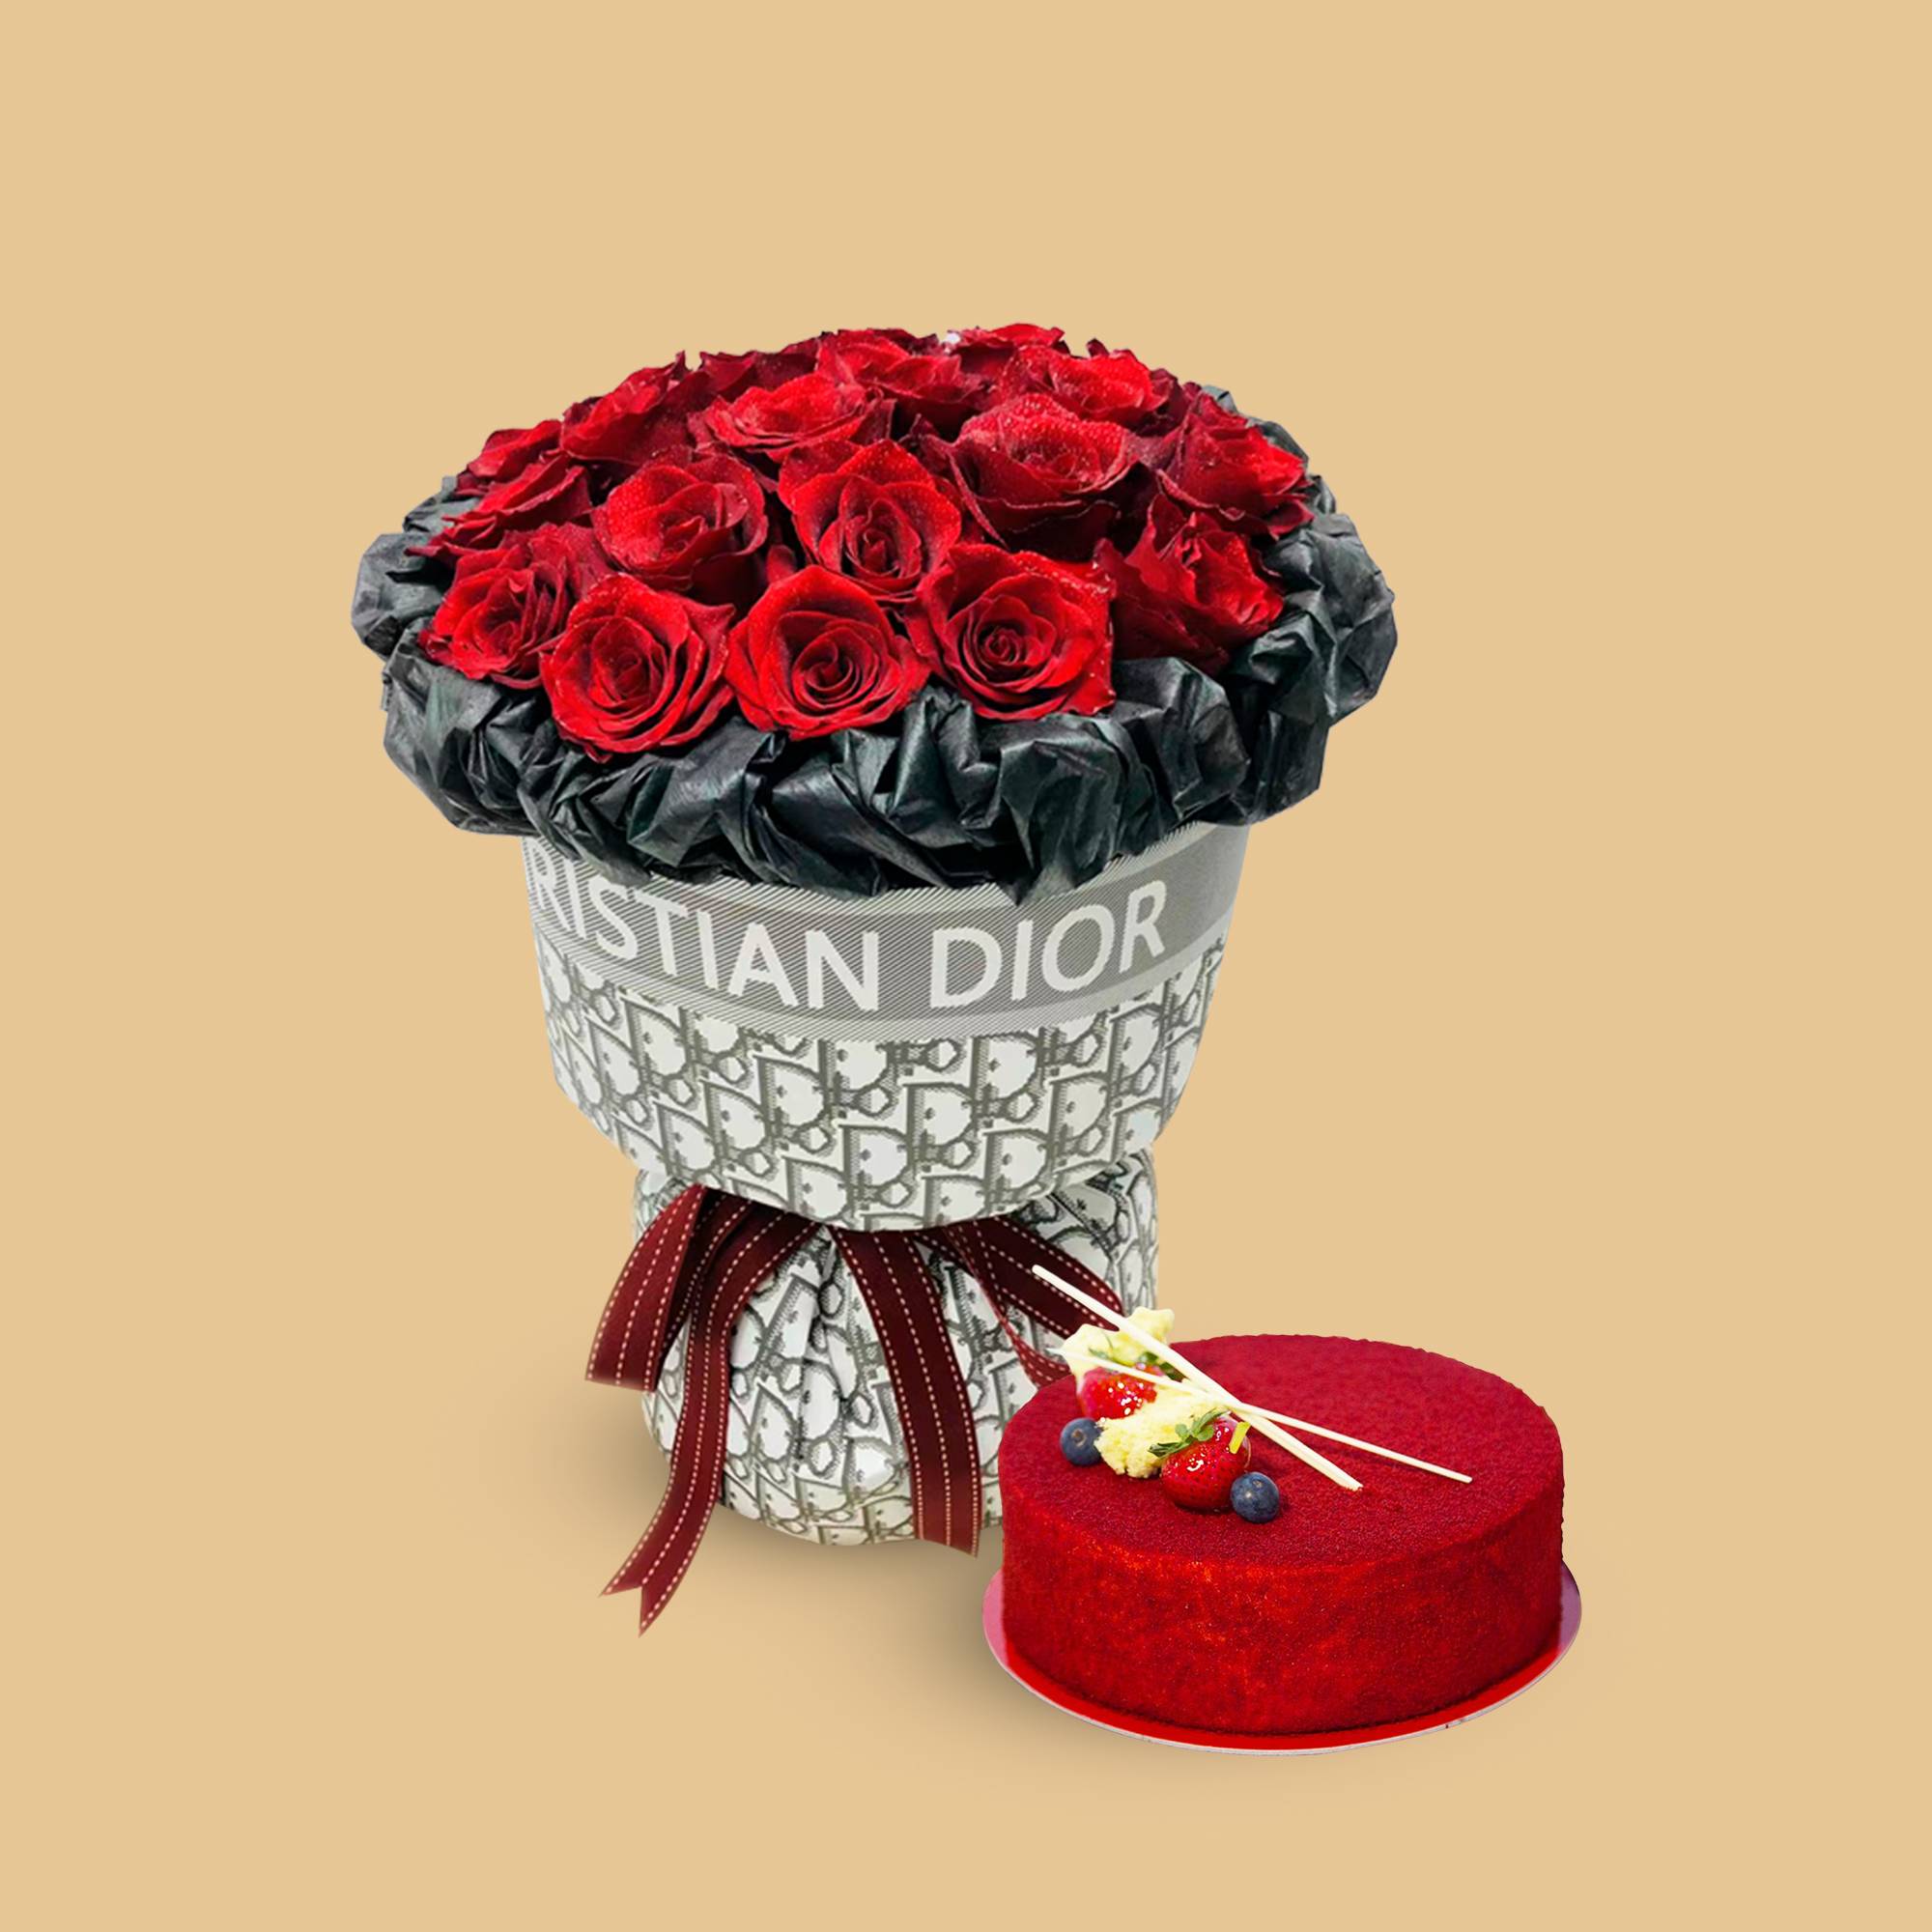 Combo Christion Dior Fresh Flower | Flower Gift Center